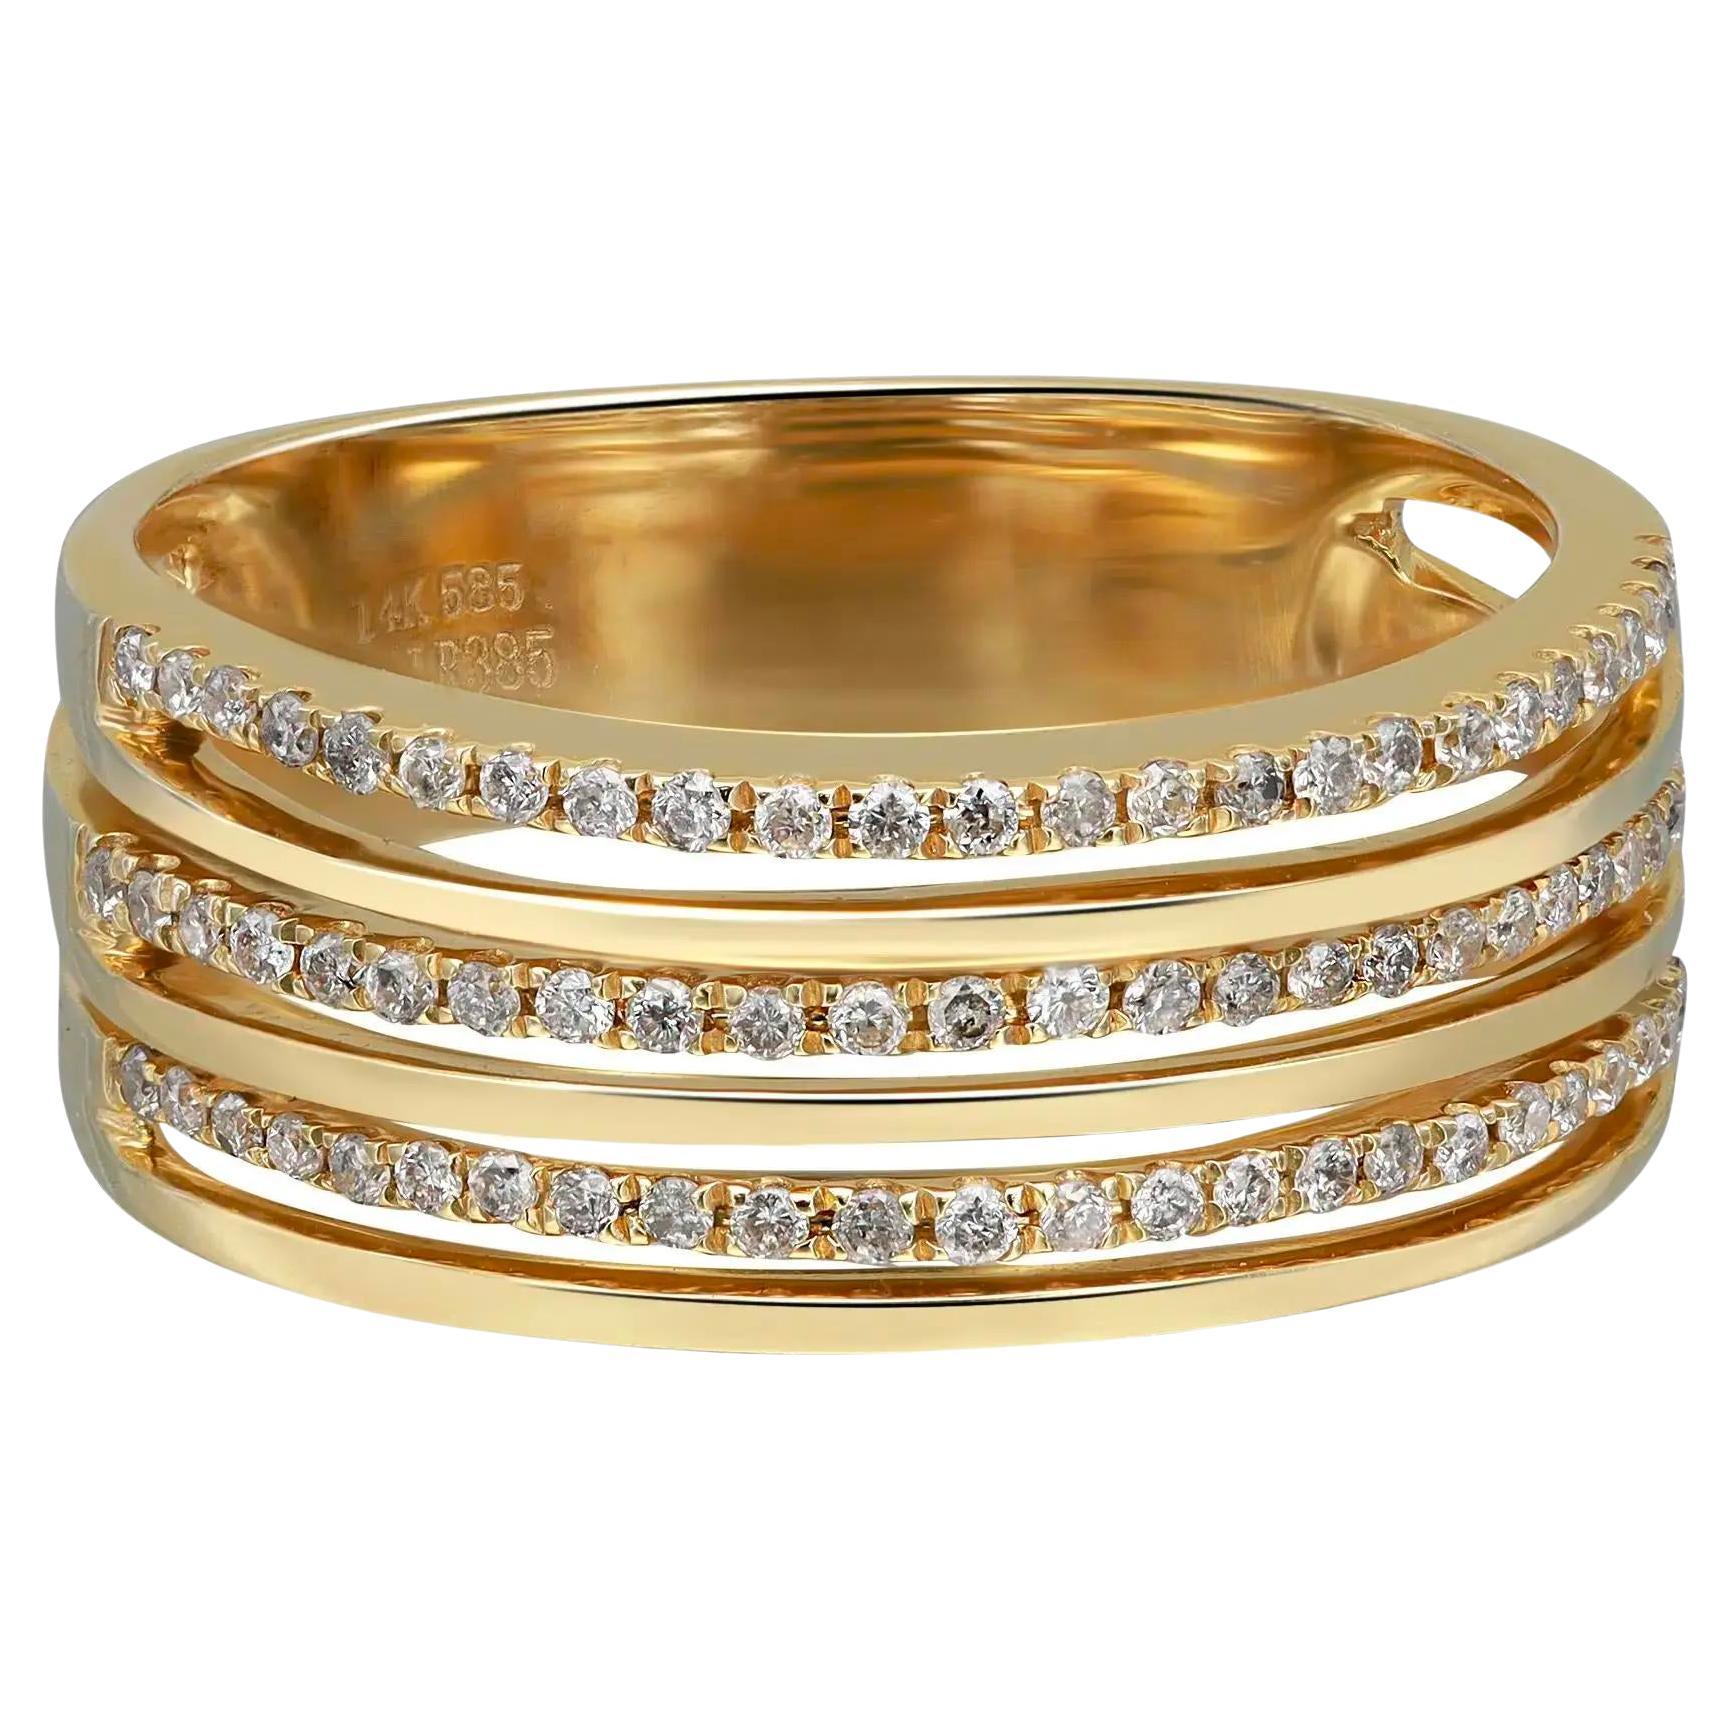 0,31cttw Ring mit rundem Diamanten in Zackenfassung, mehrreihig, 14k Gelbgold